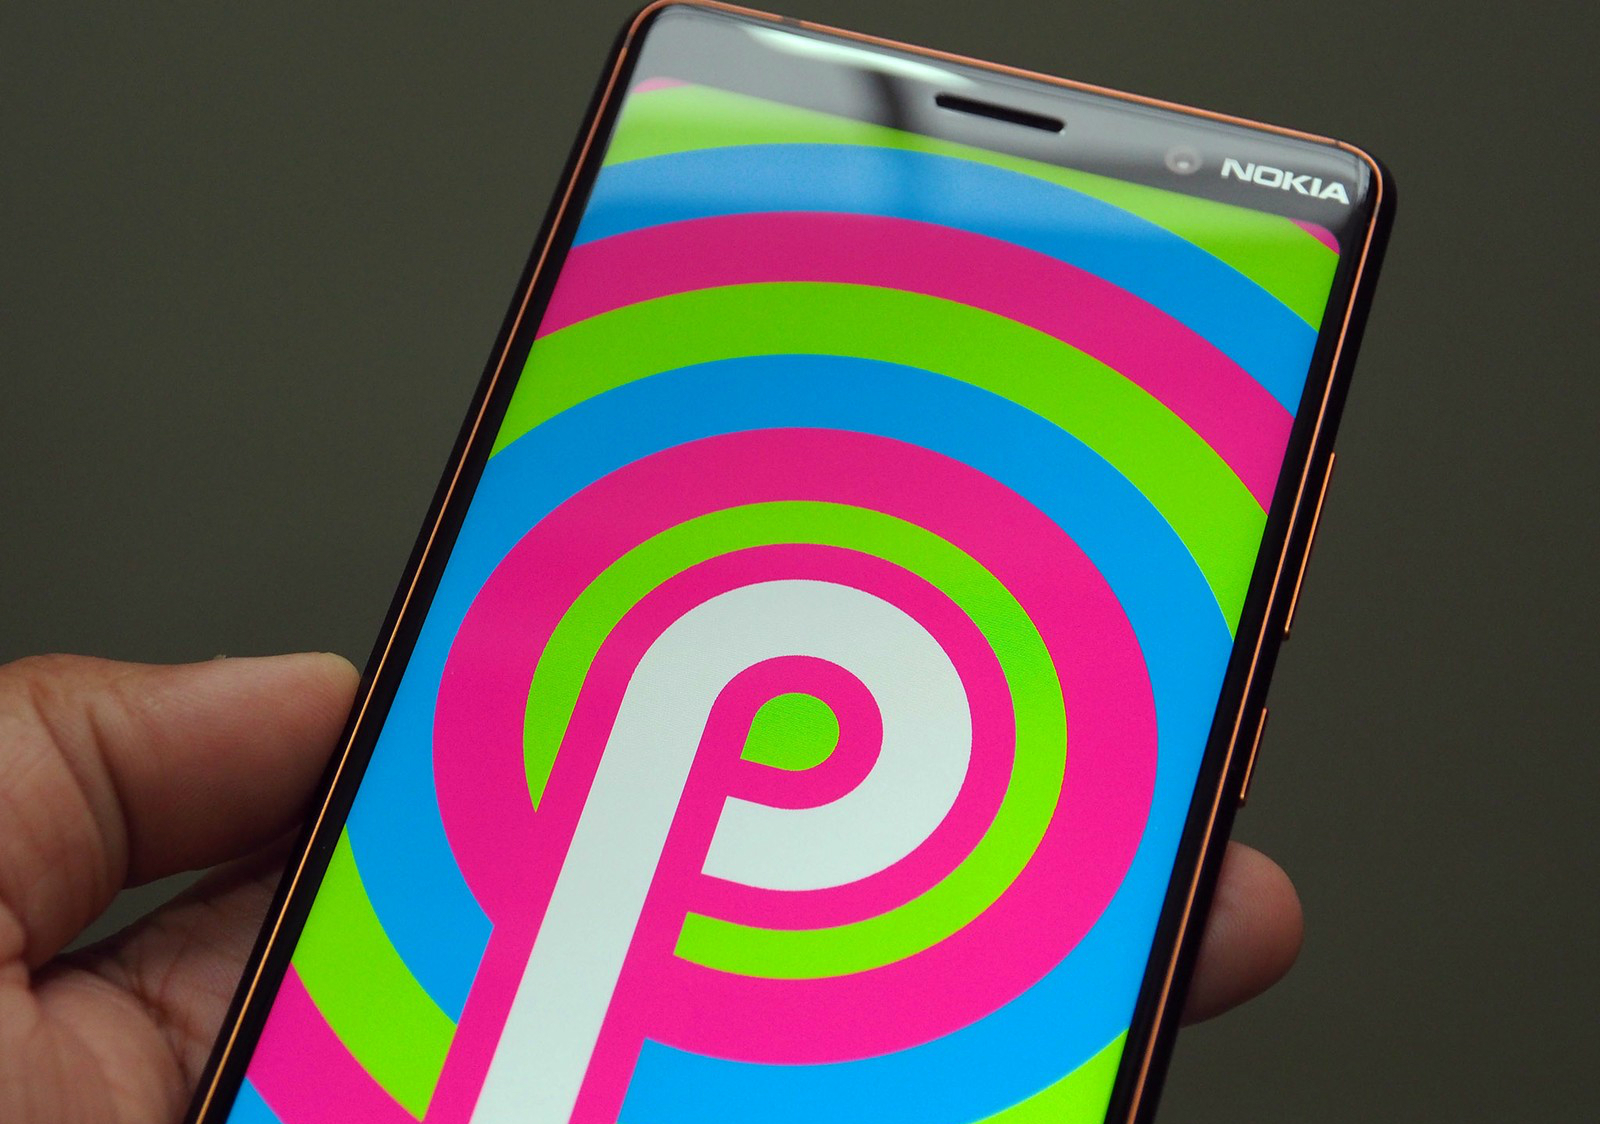 смартфоны которые получат Android 9 Pie